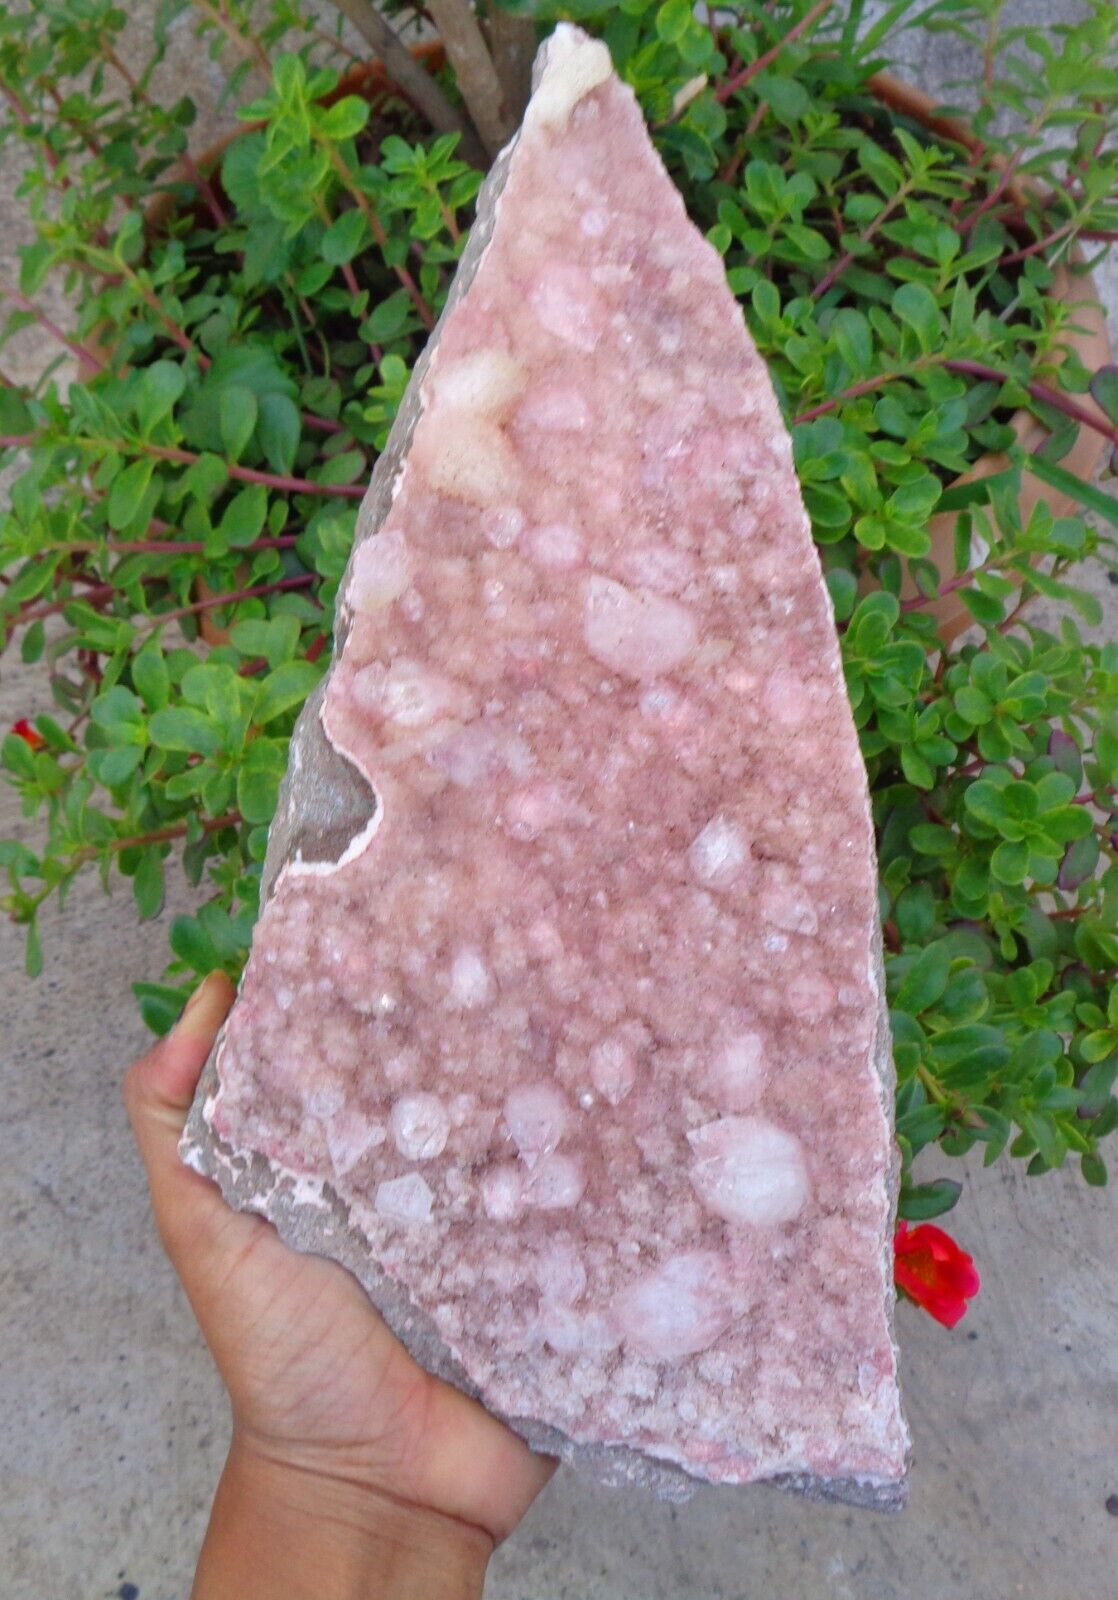 Apophyllite Crystals On Light Pink Matrix Minerals Specimen #E63